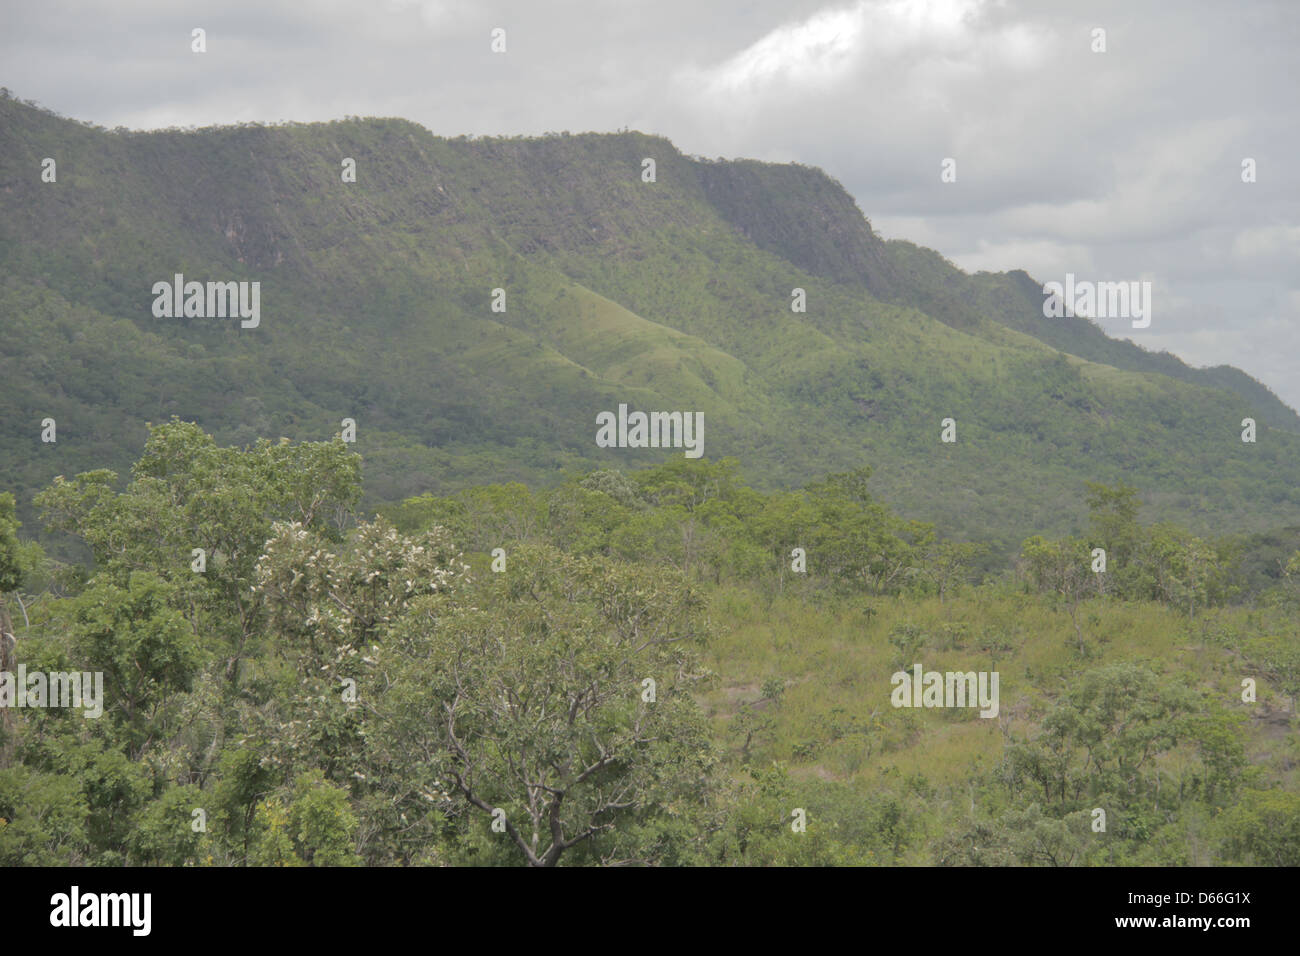 Land scape at Chapada dos Veadeiros, high altitude flora, Brazil Stock Photo